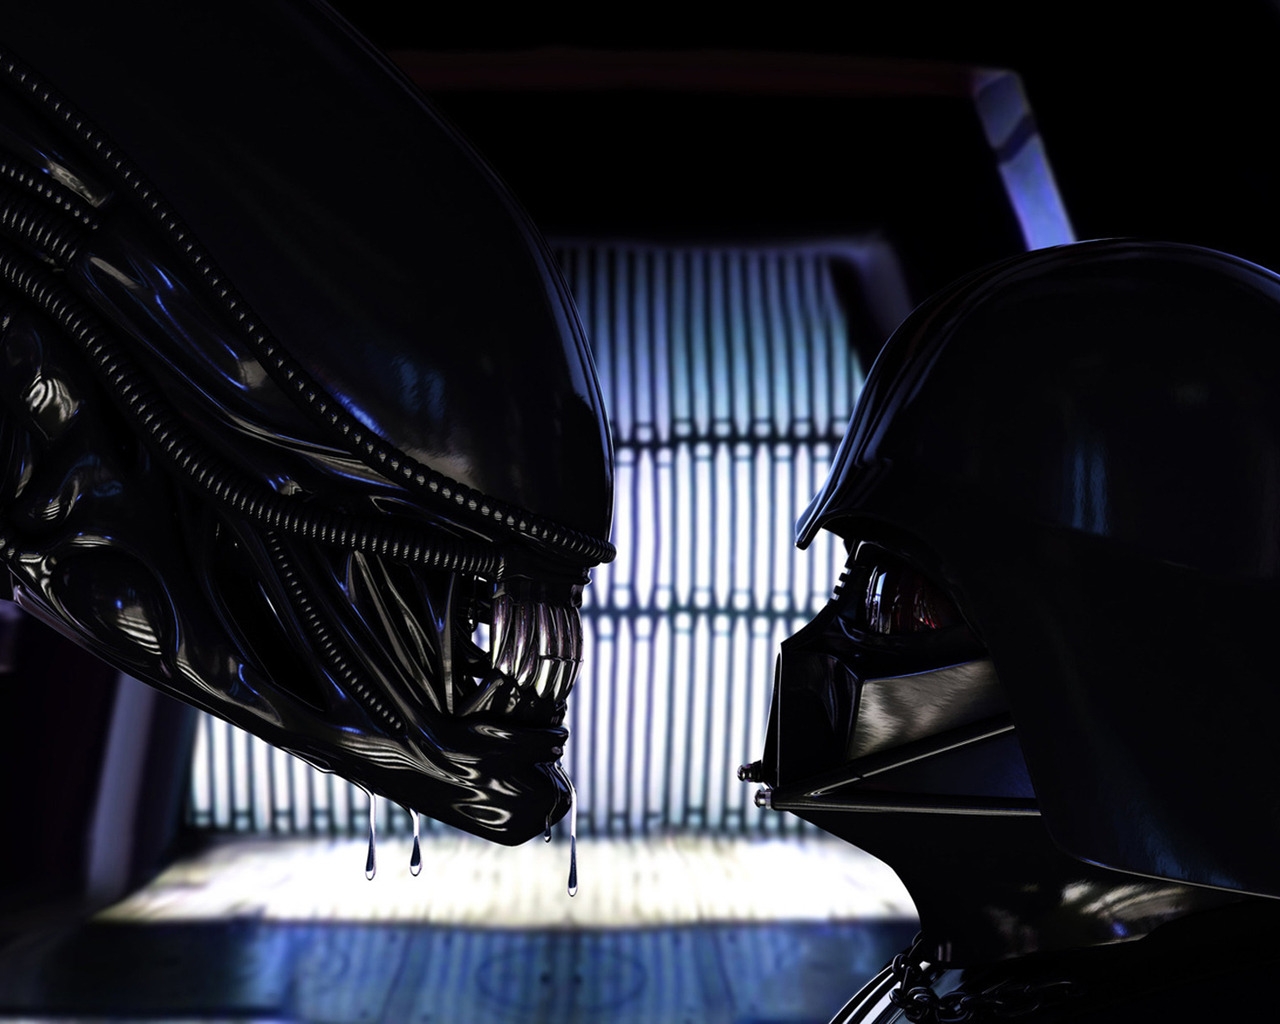 Alien vs Darth Vader for 1280 x 1024 resolution